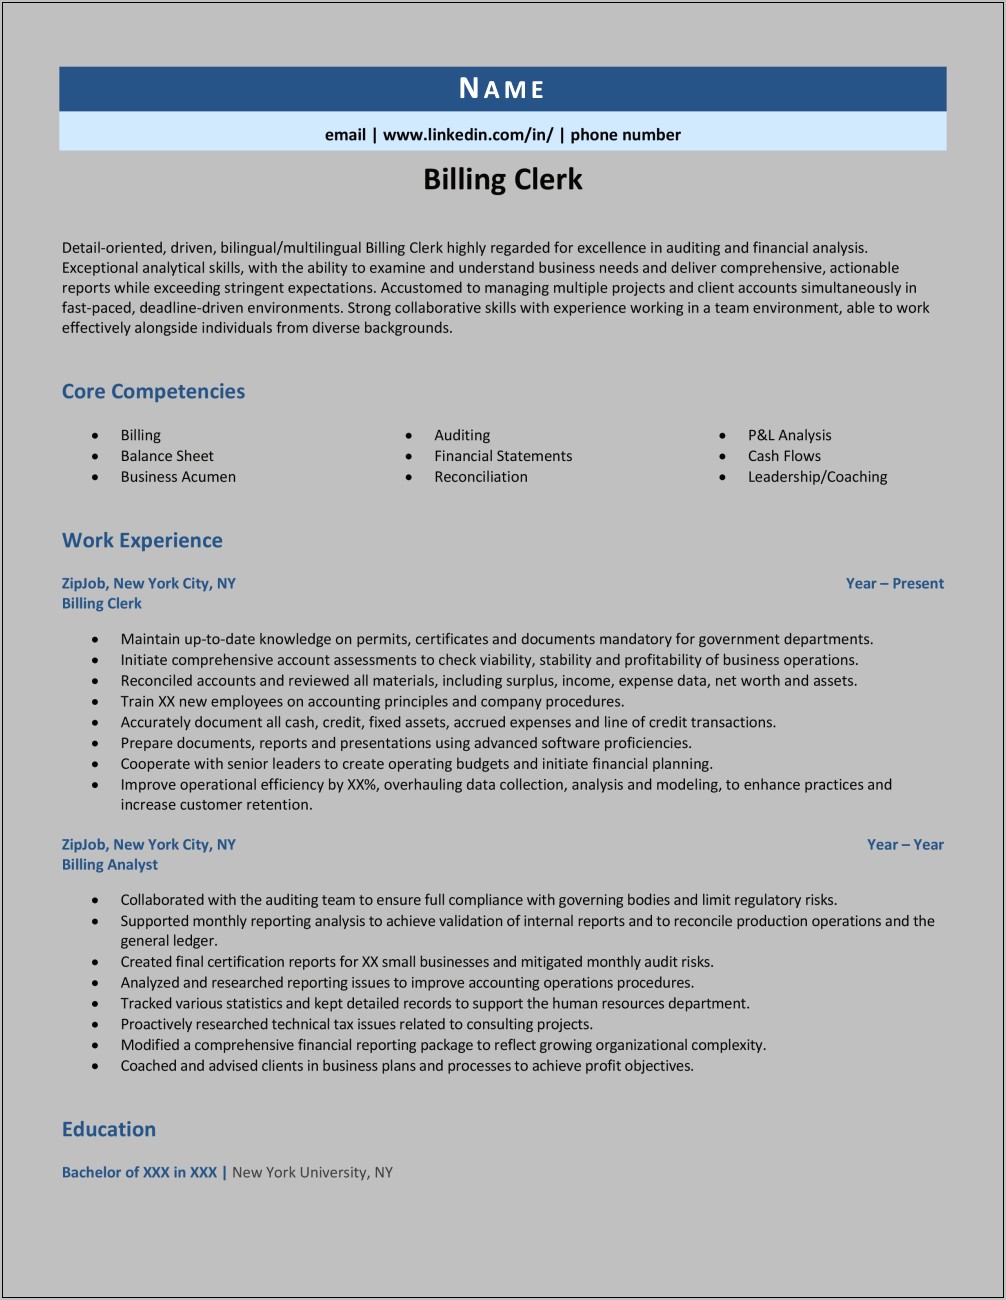 Billing Clerk Job Description Resume